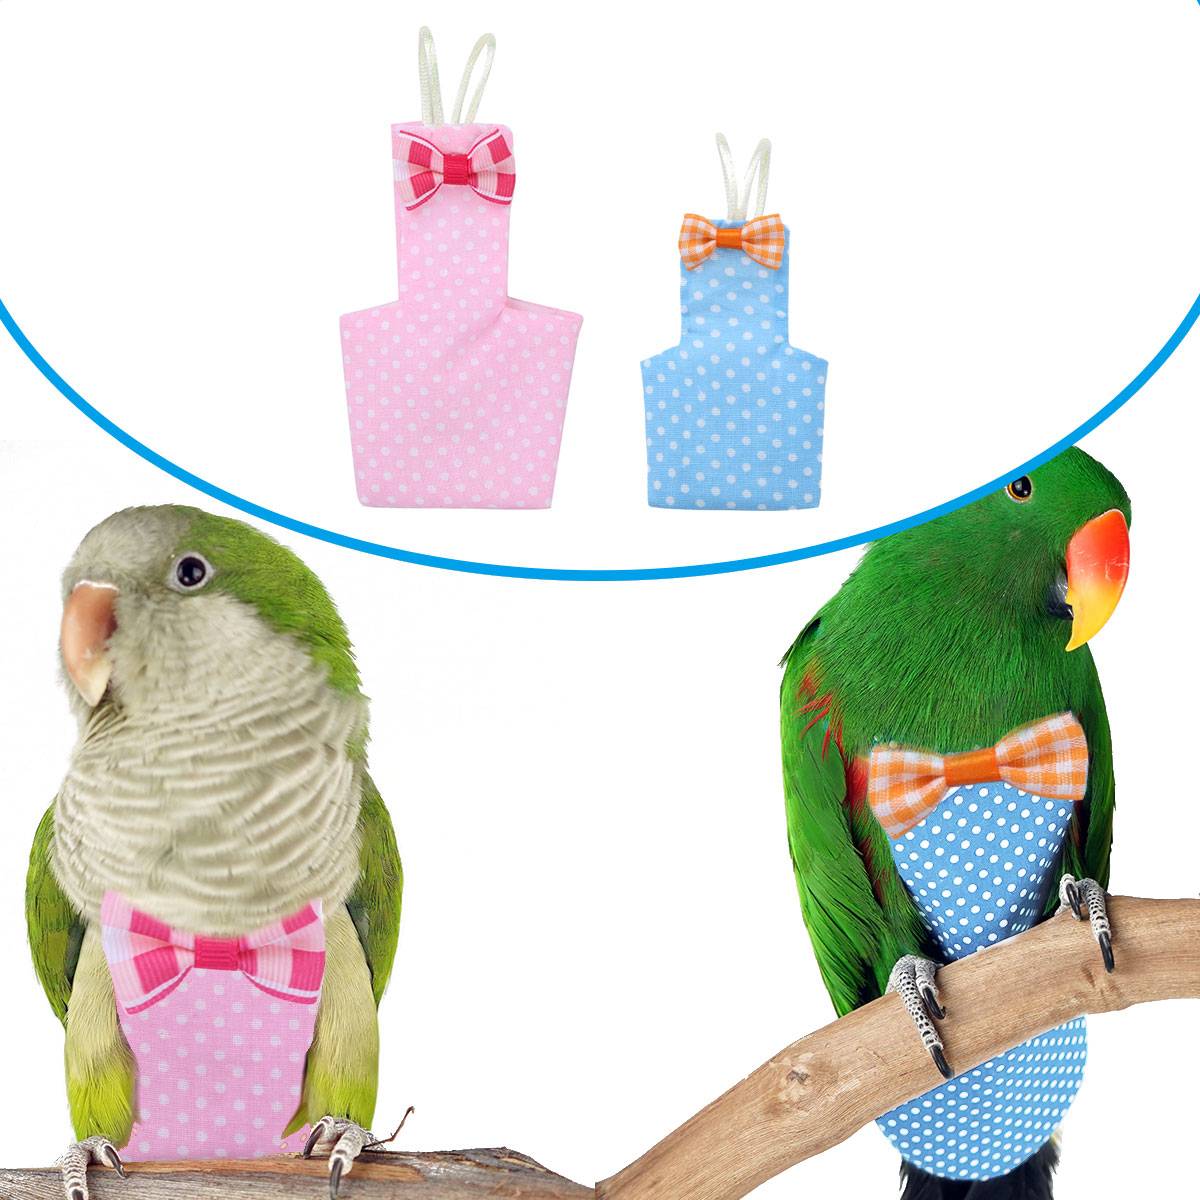 ᐉ памперсы для попугаев - для чего нужны и как применять? - zoogradspb.ru